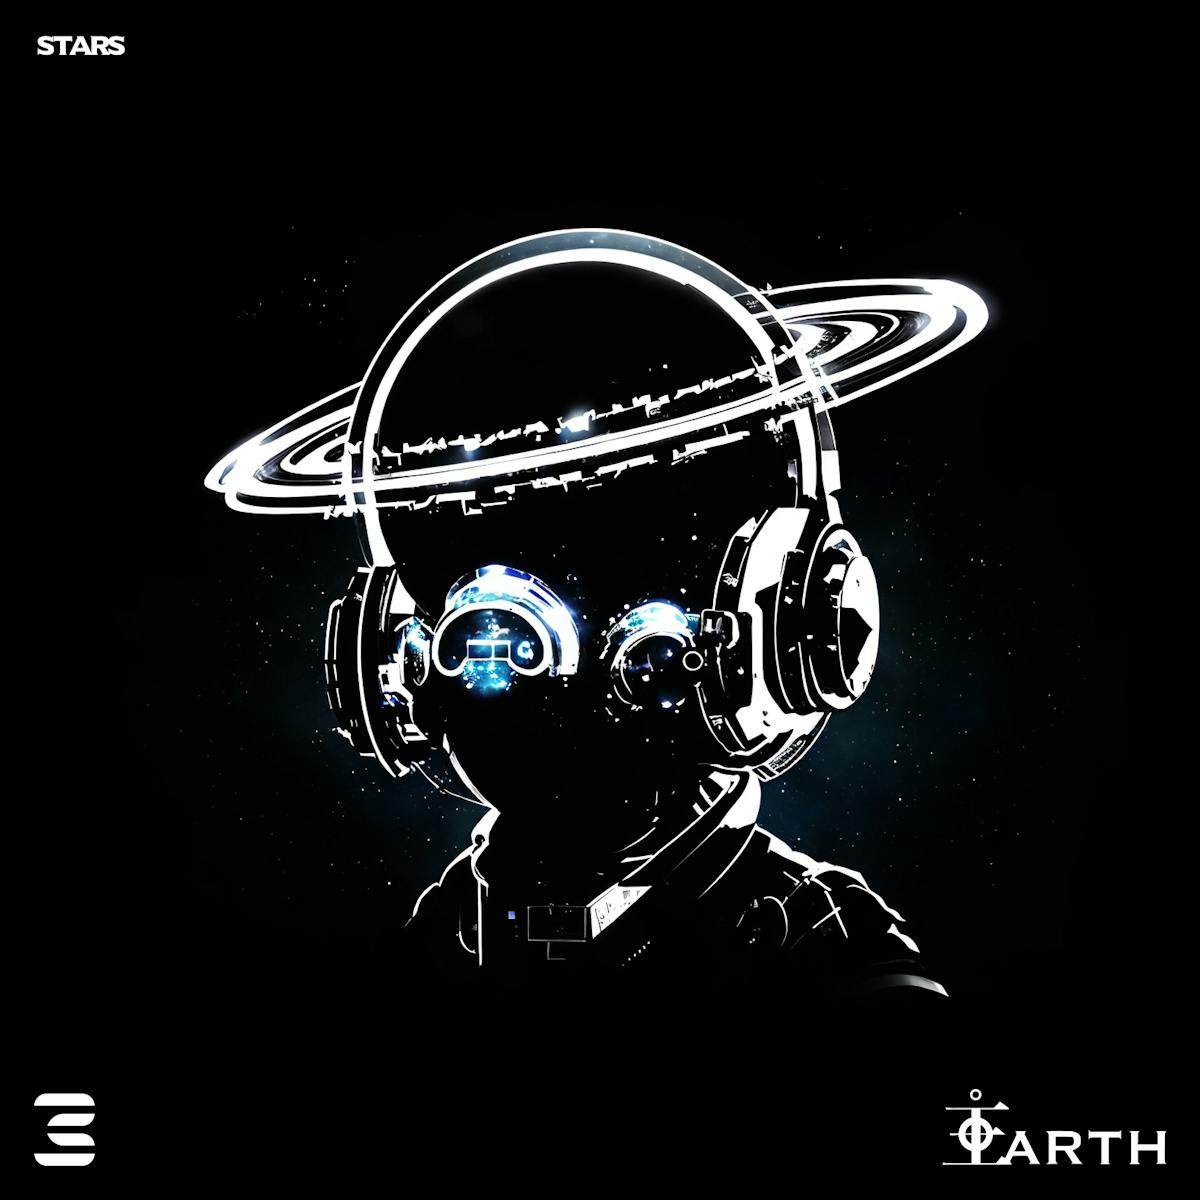 ID:Earth